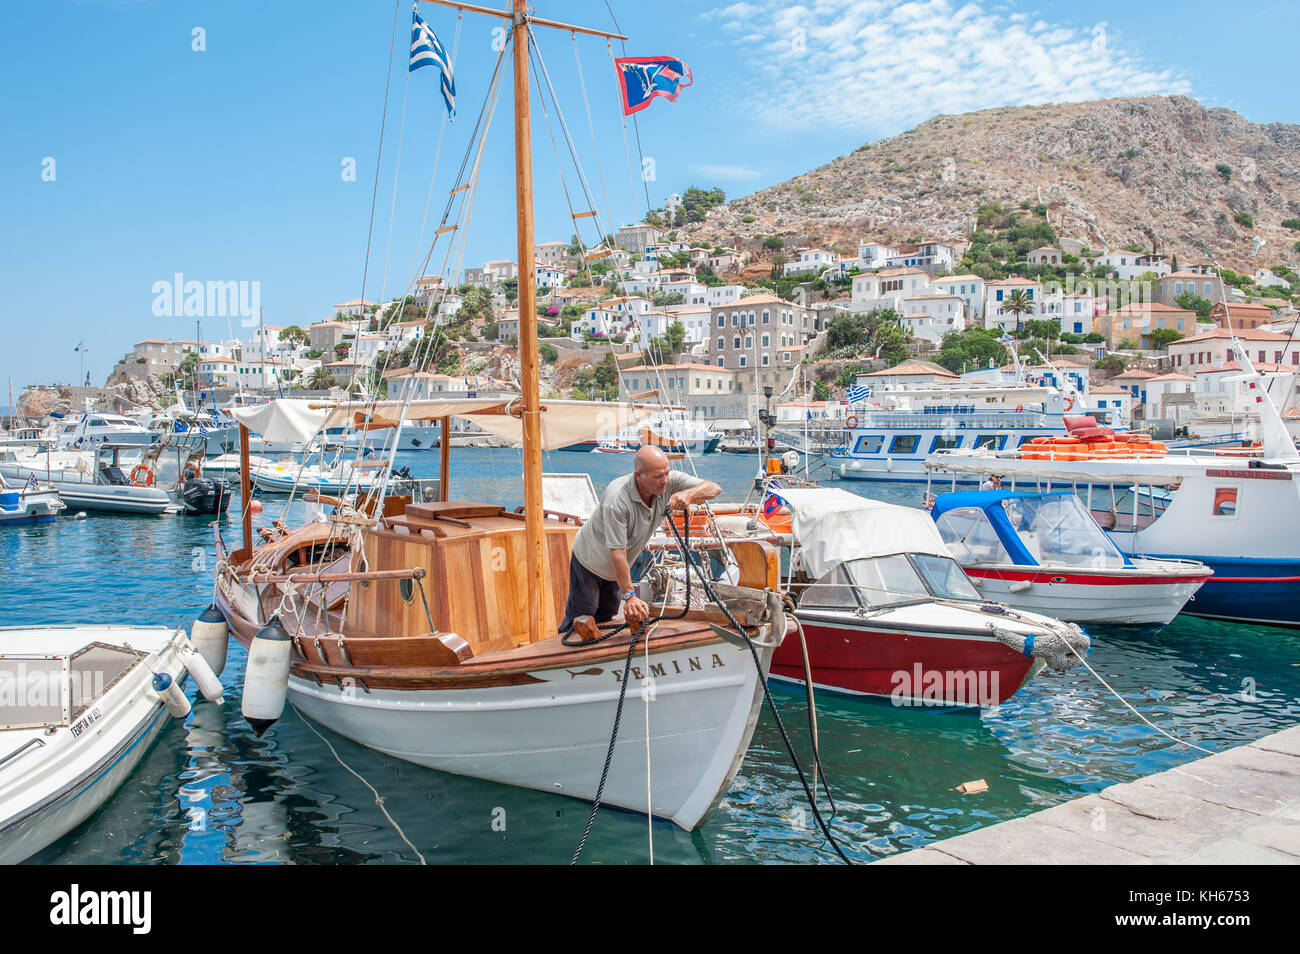 Bateau de pêche à l'Hydra, une île grecque de la mer Égée appartenant à l'iles saroniques. hydra est une destination populaire auprès des touristes et des artistes. Banque D'Images